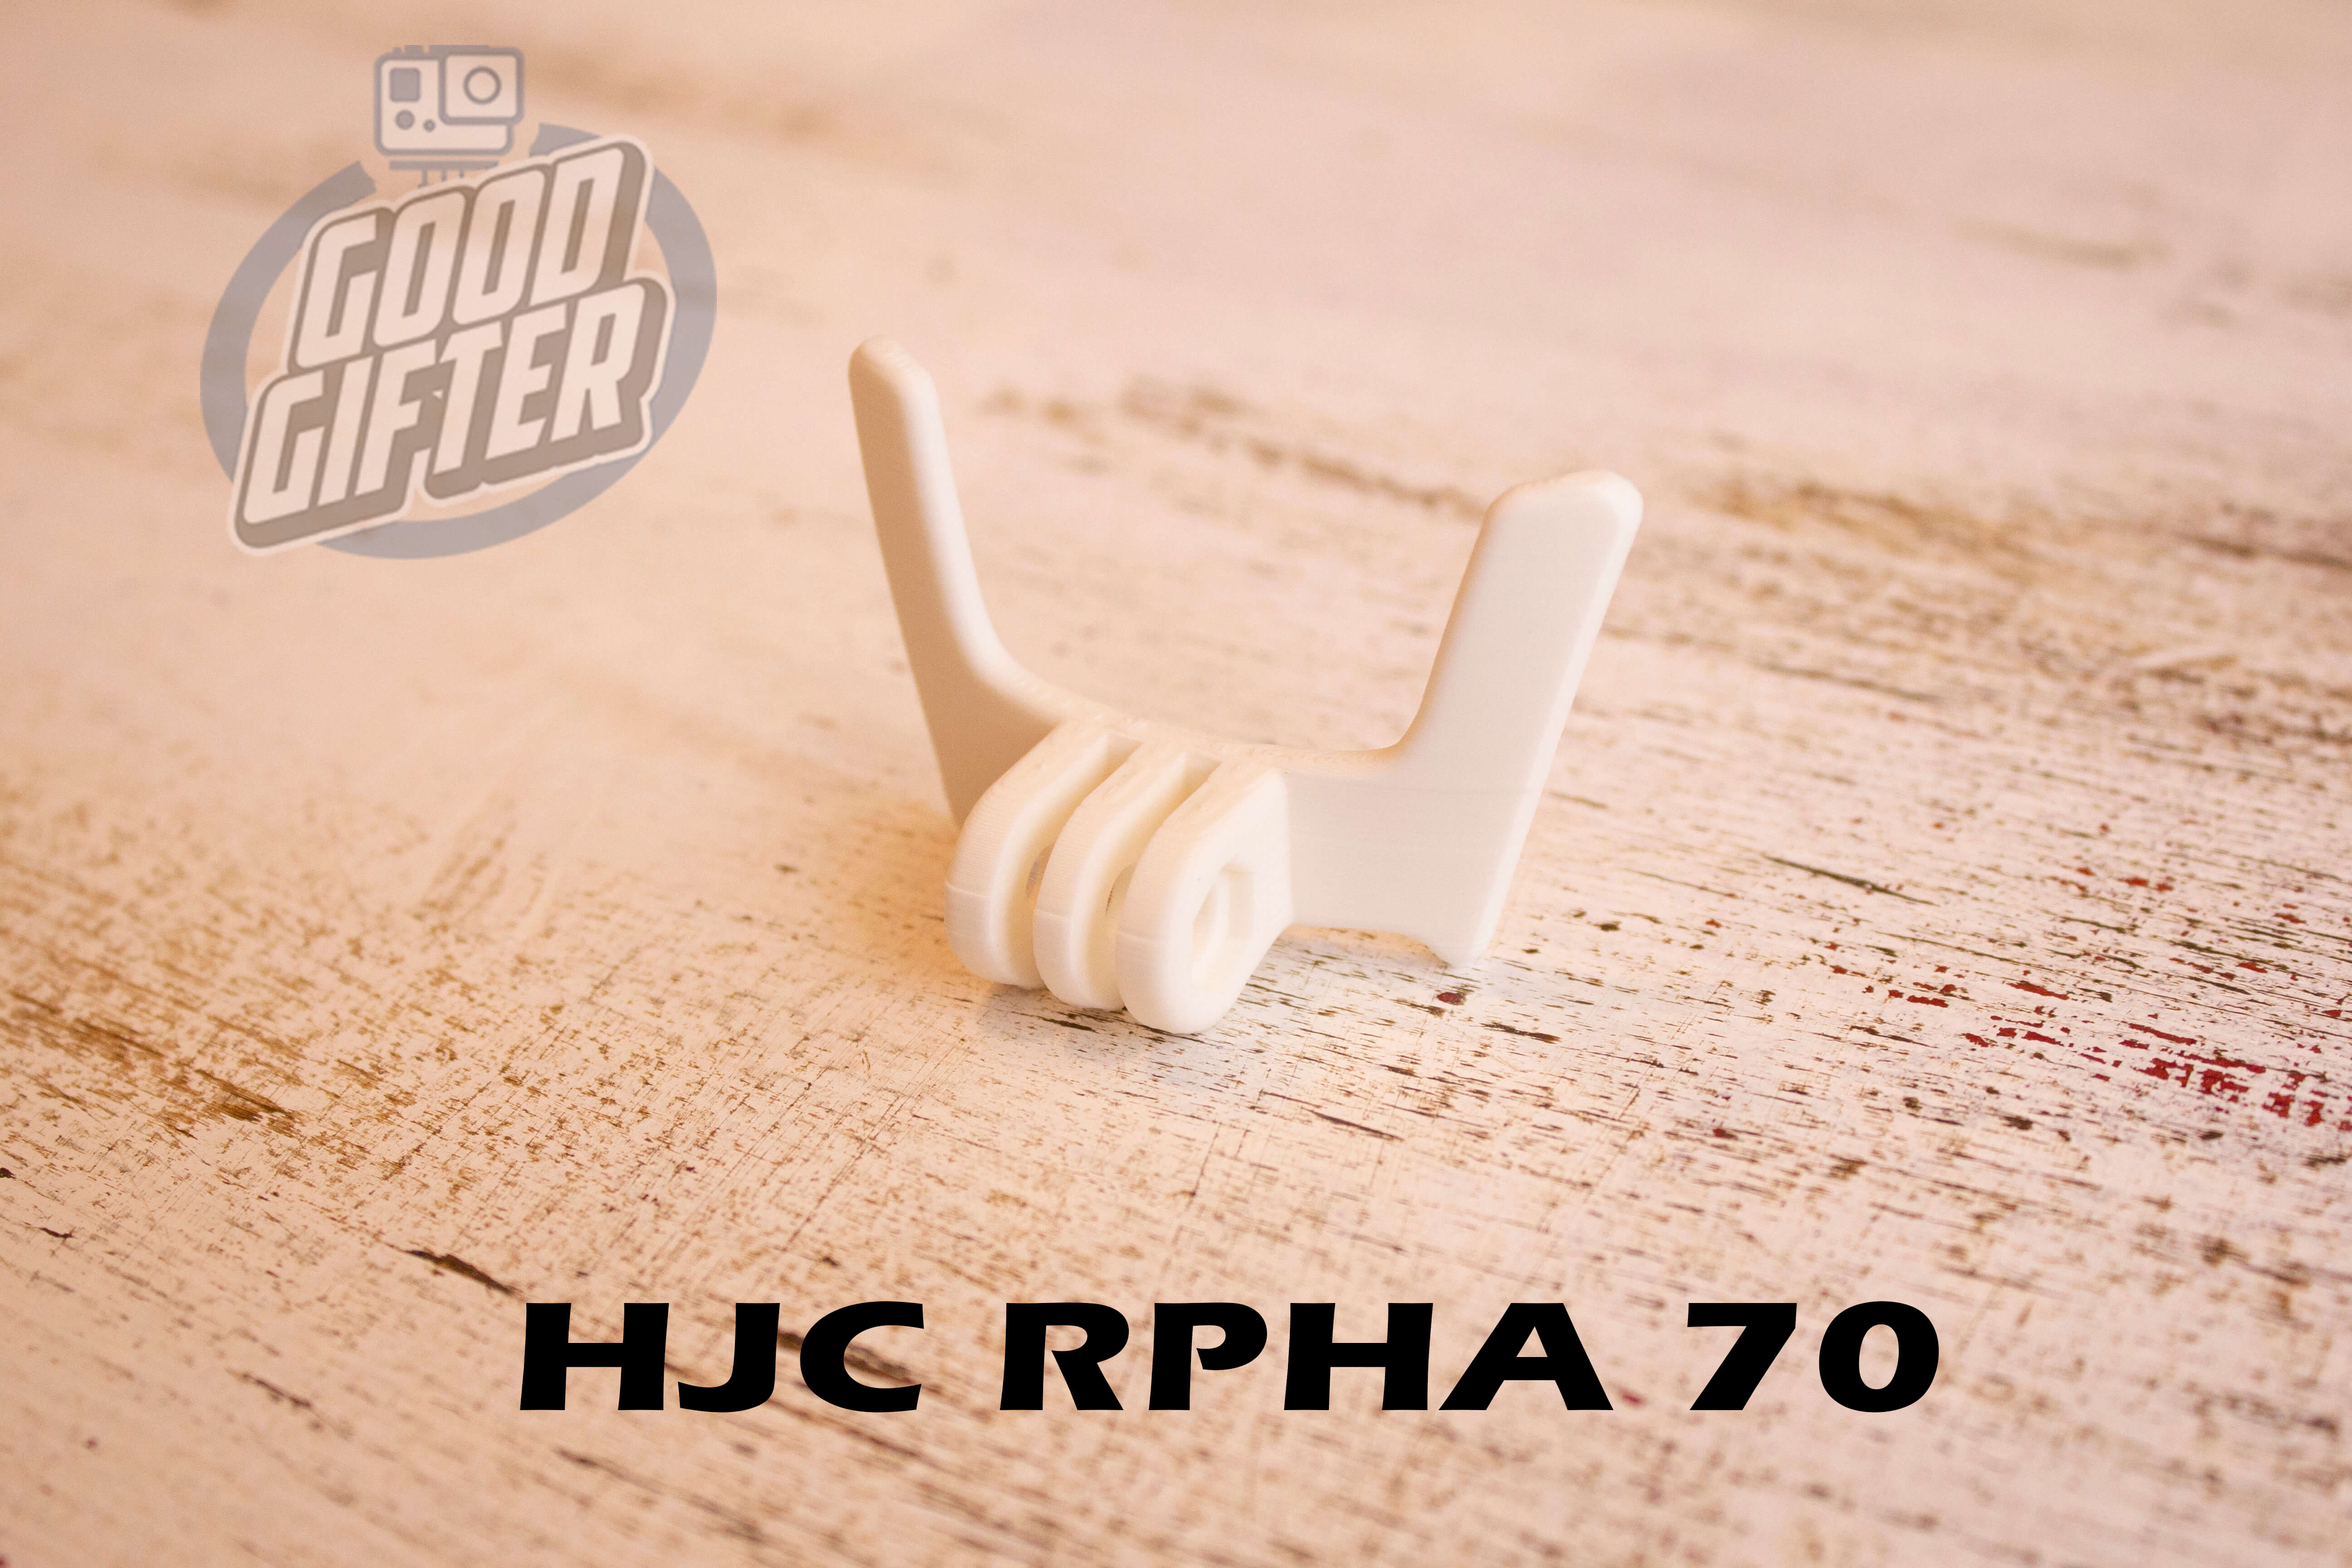 Крепление на мотошлем HJC RPHA 70 в белоv цвете для GoPro